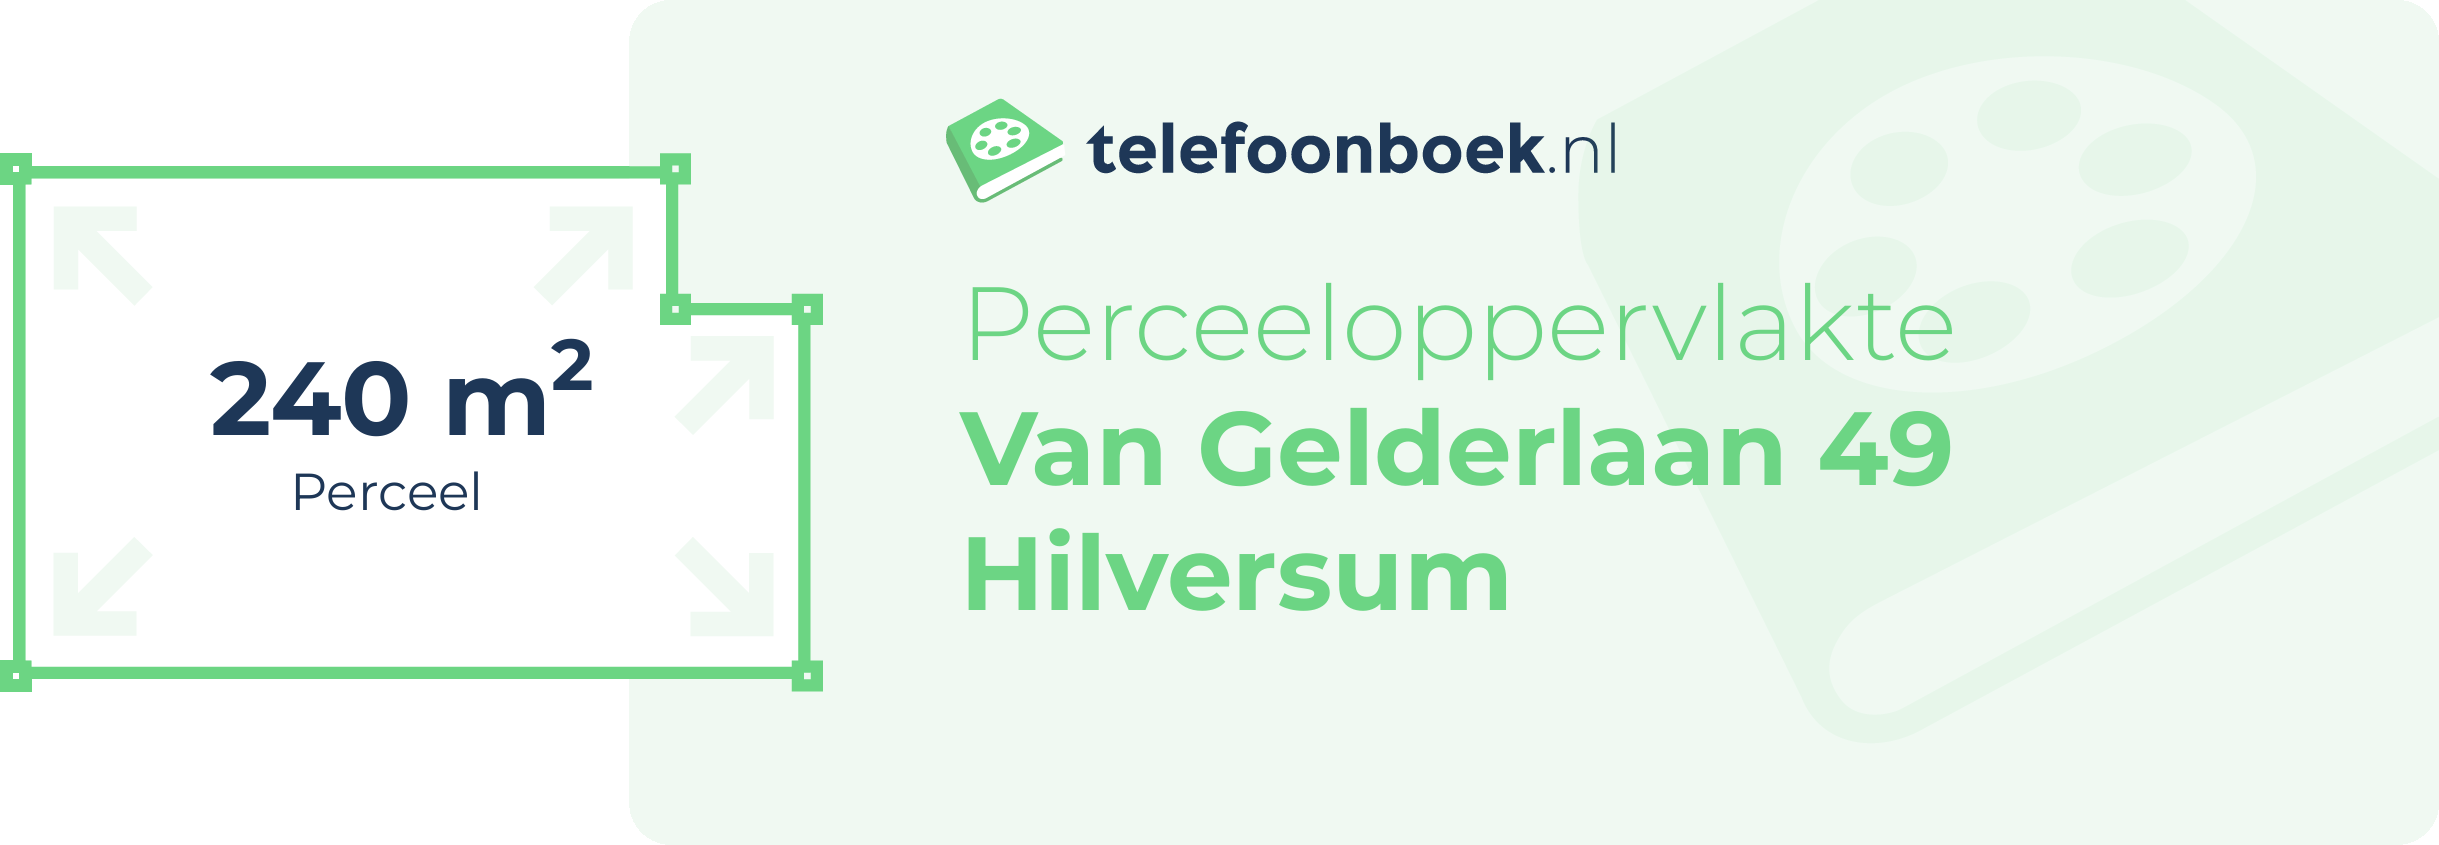 Perceeloppervlakte Van Gelderlaan 49 Hilversum